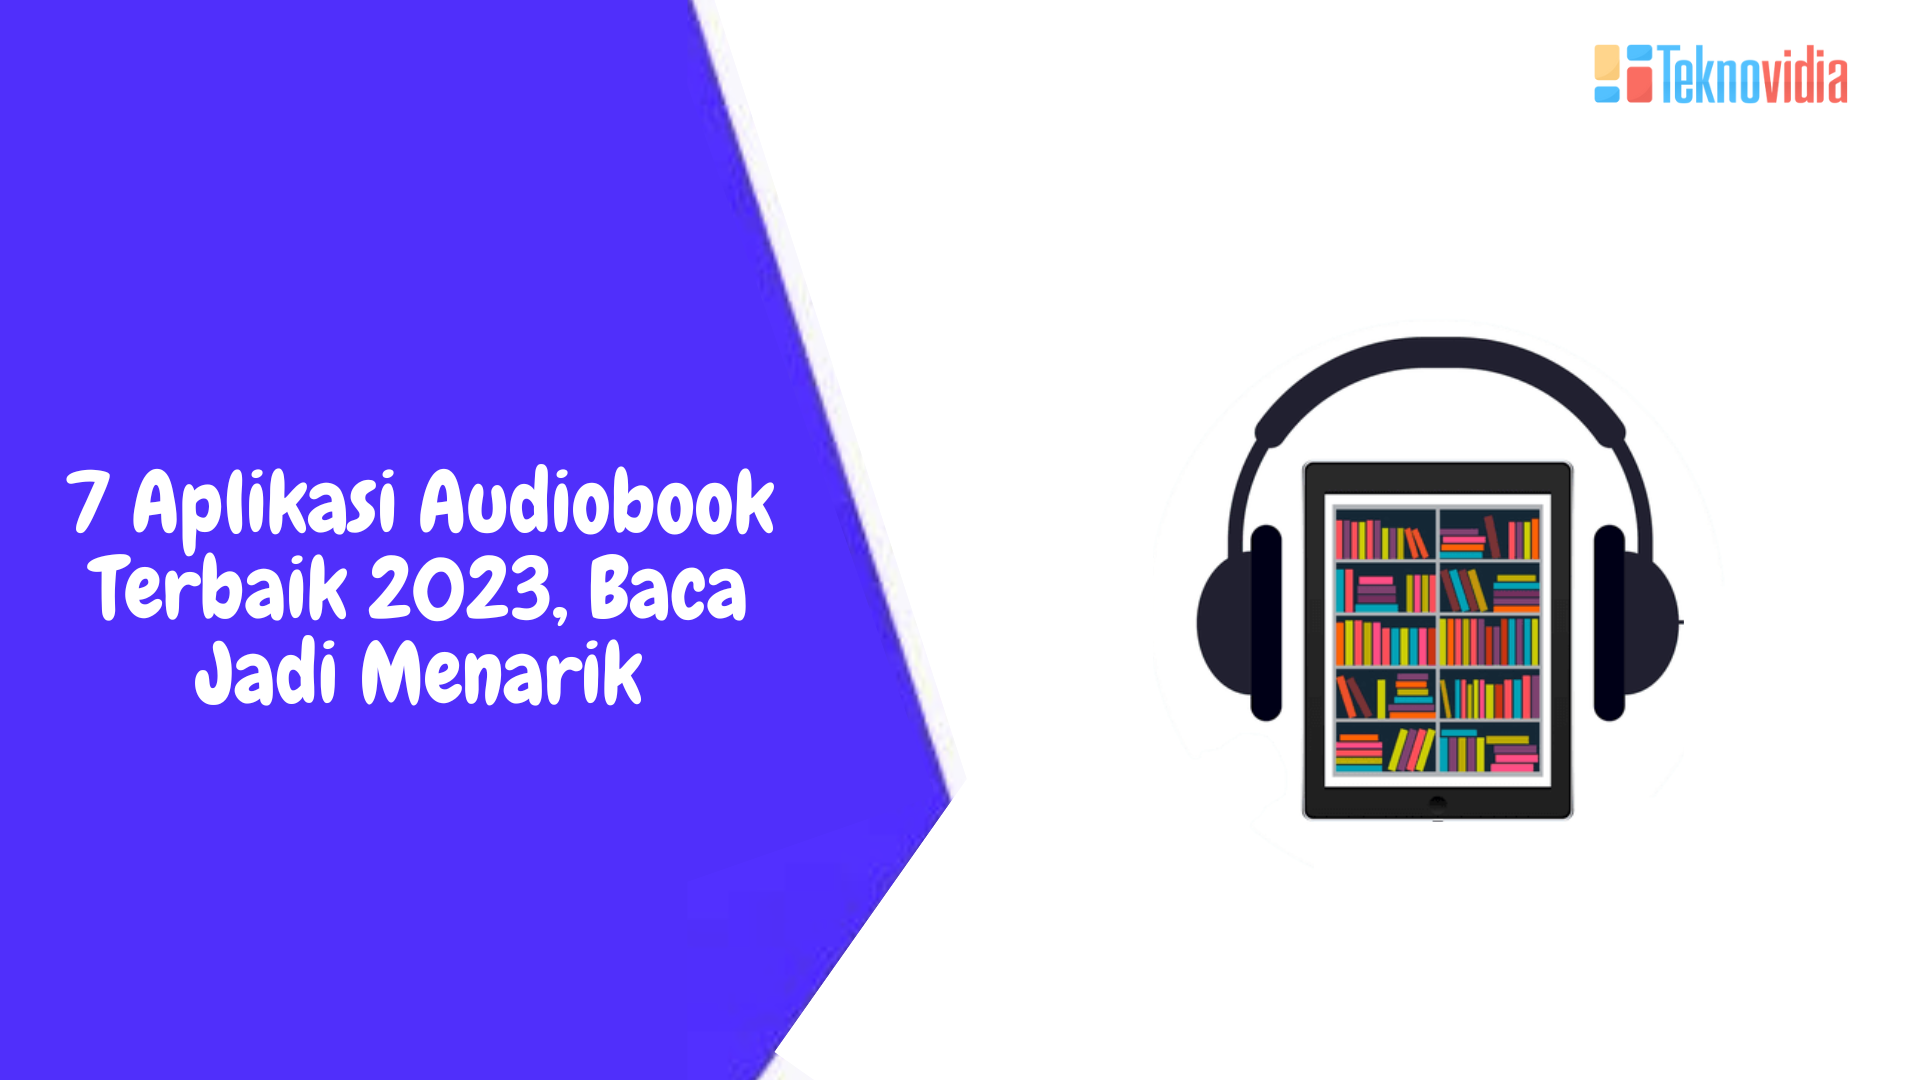 7 Aplikasi Audiobook Terbaik 2023, Baca Jadi Menarik